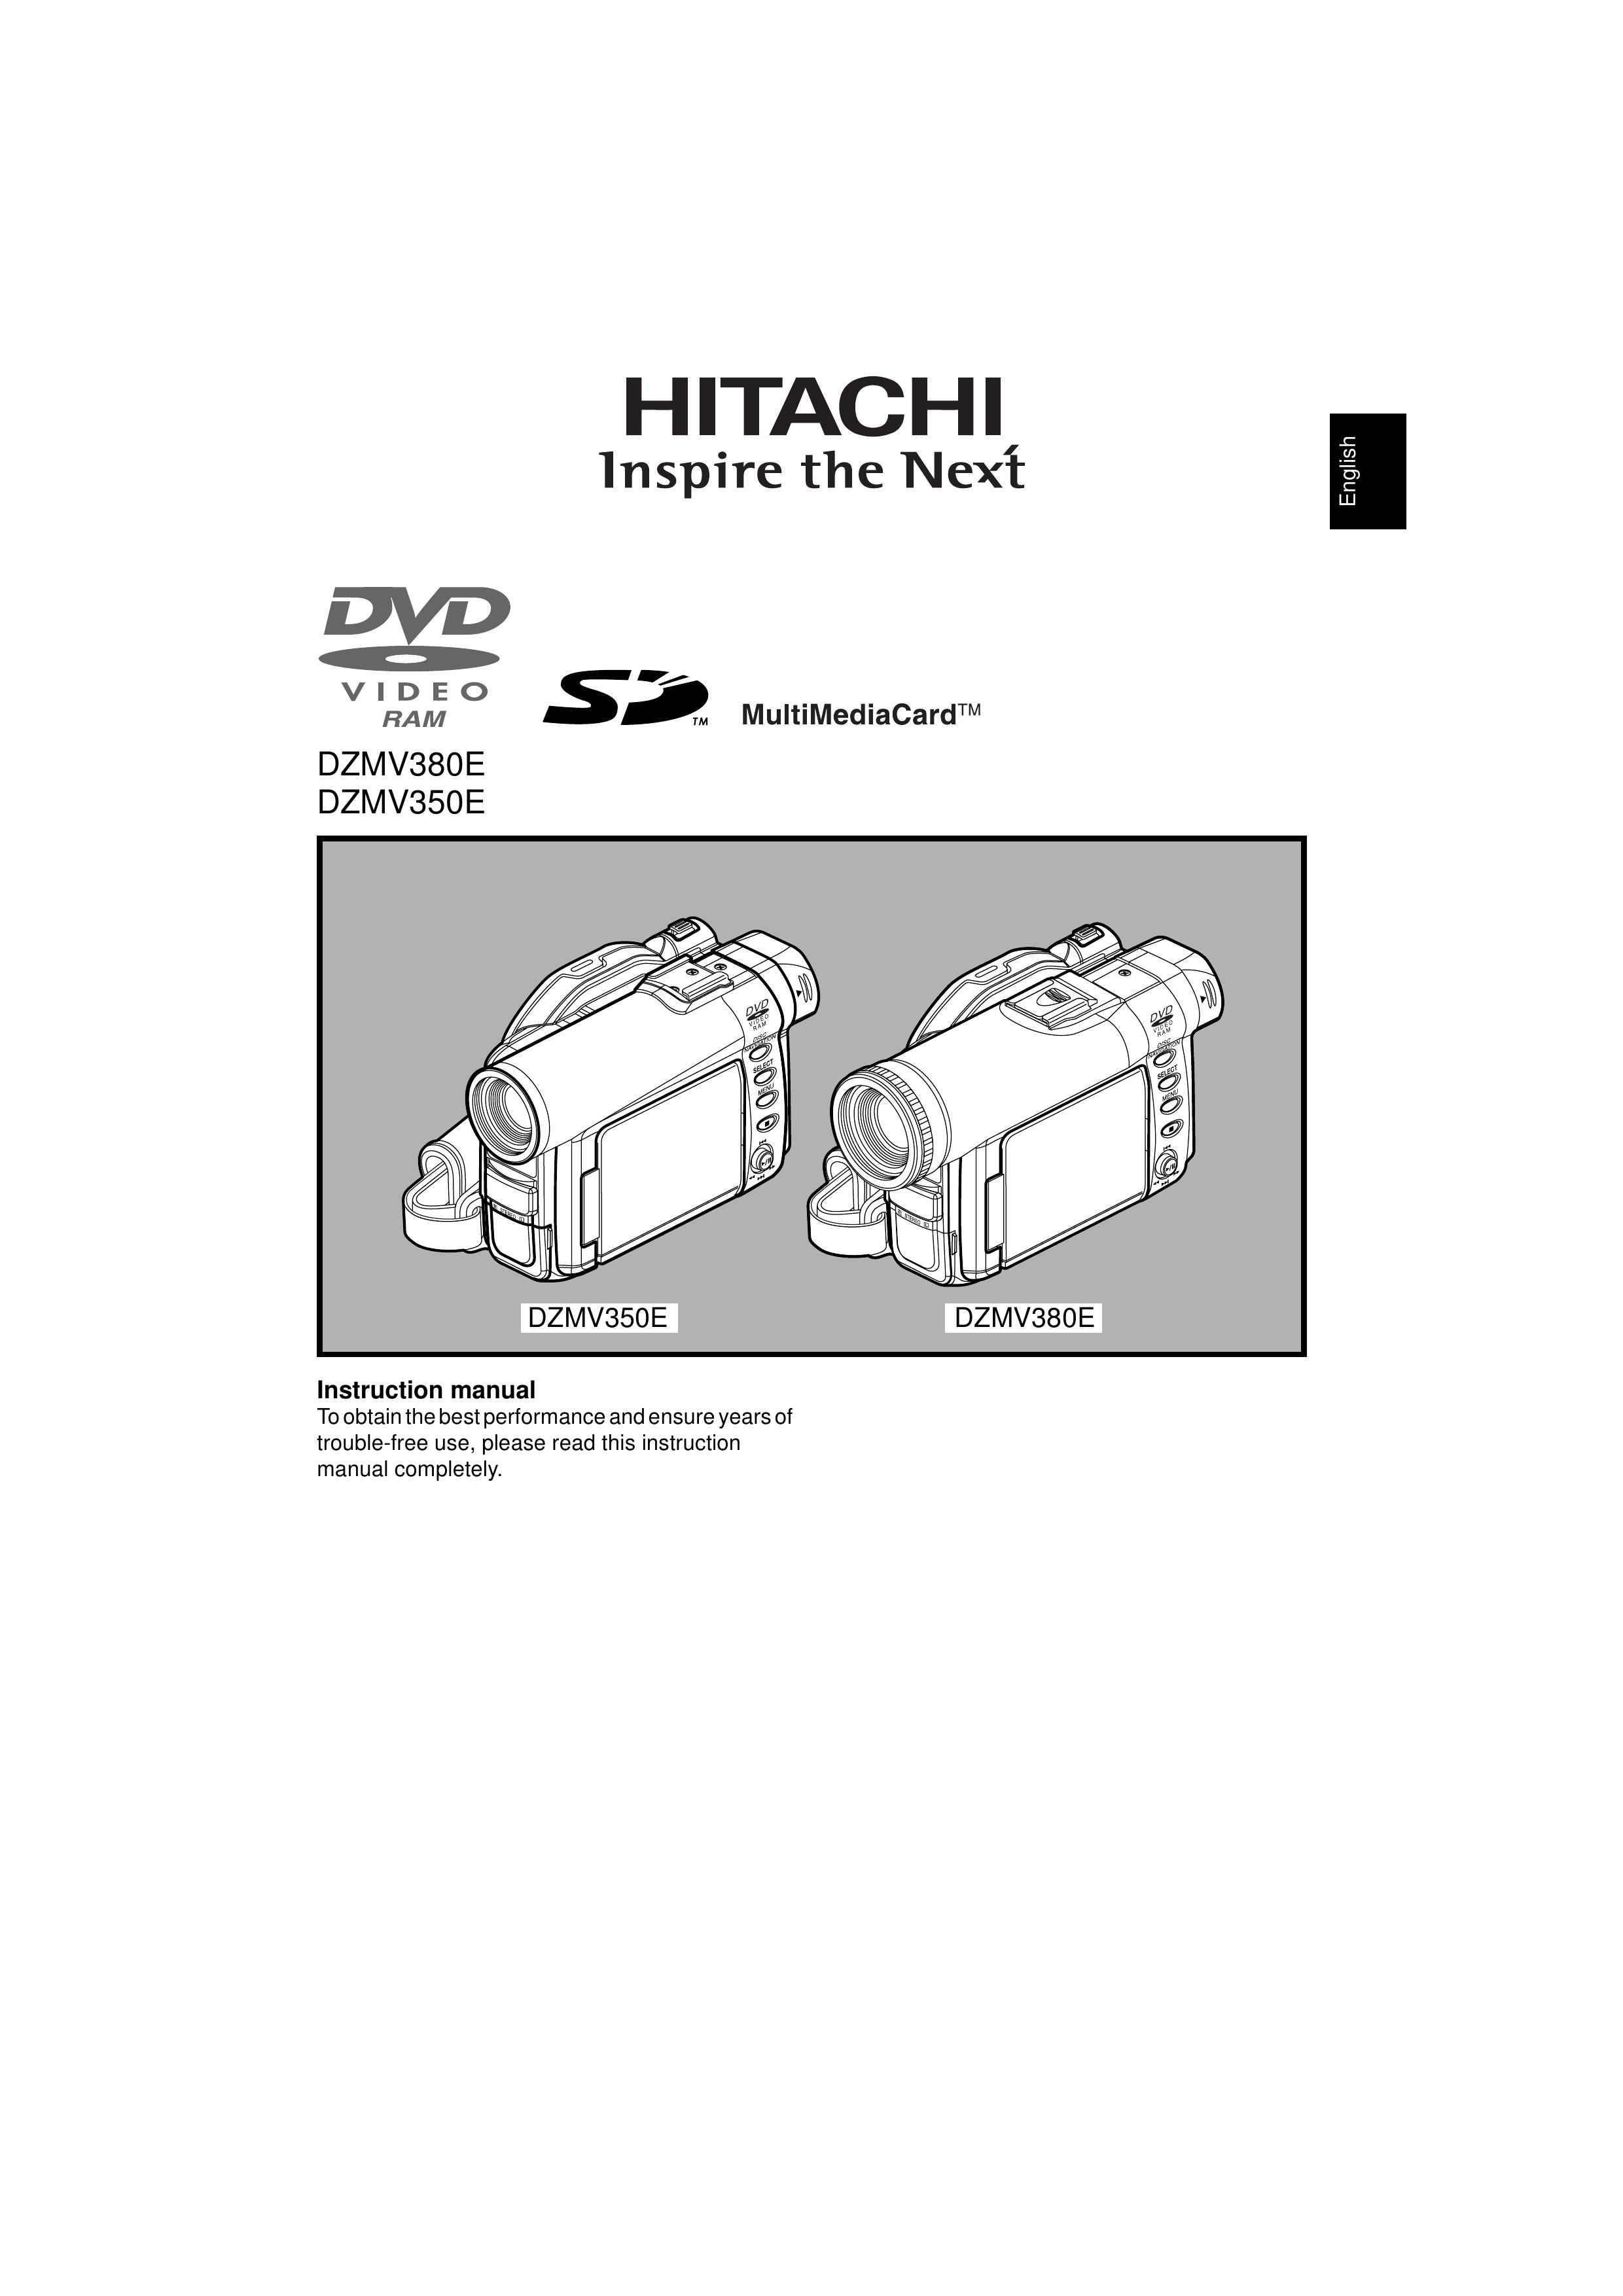 Hitachi DZMV380E Camcorder User Manual